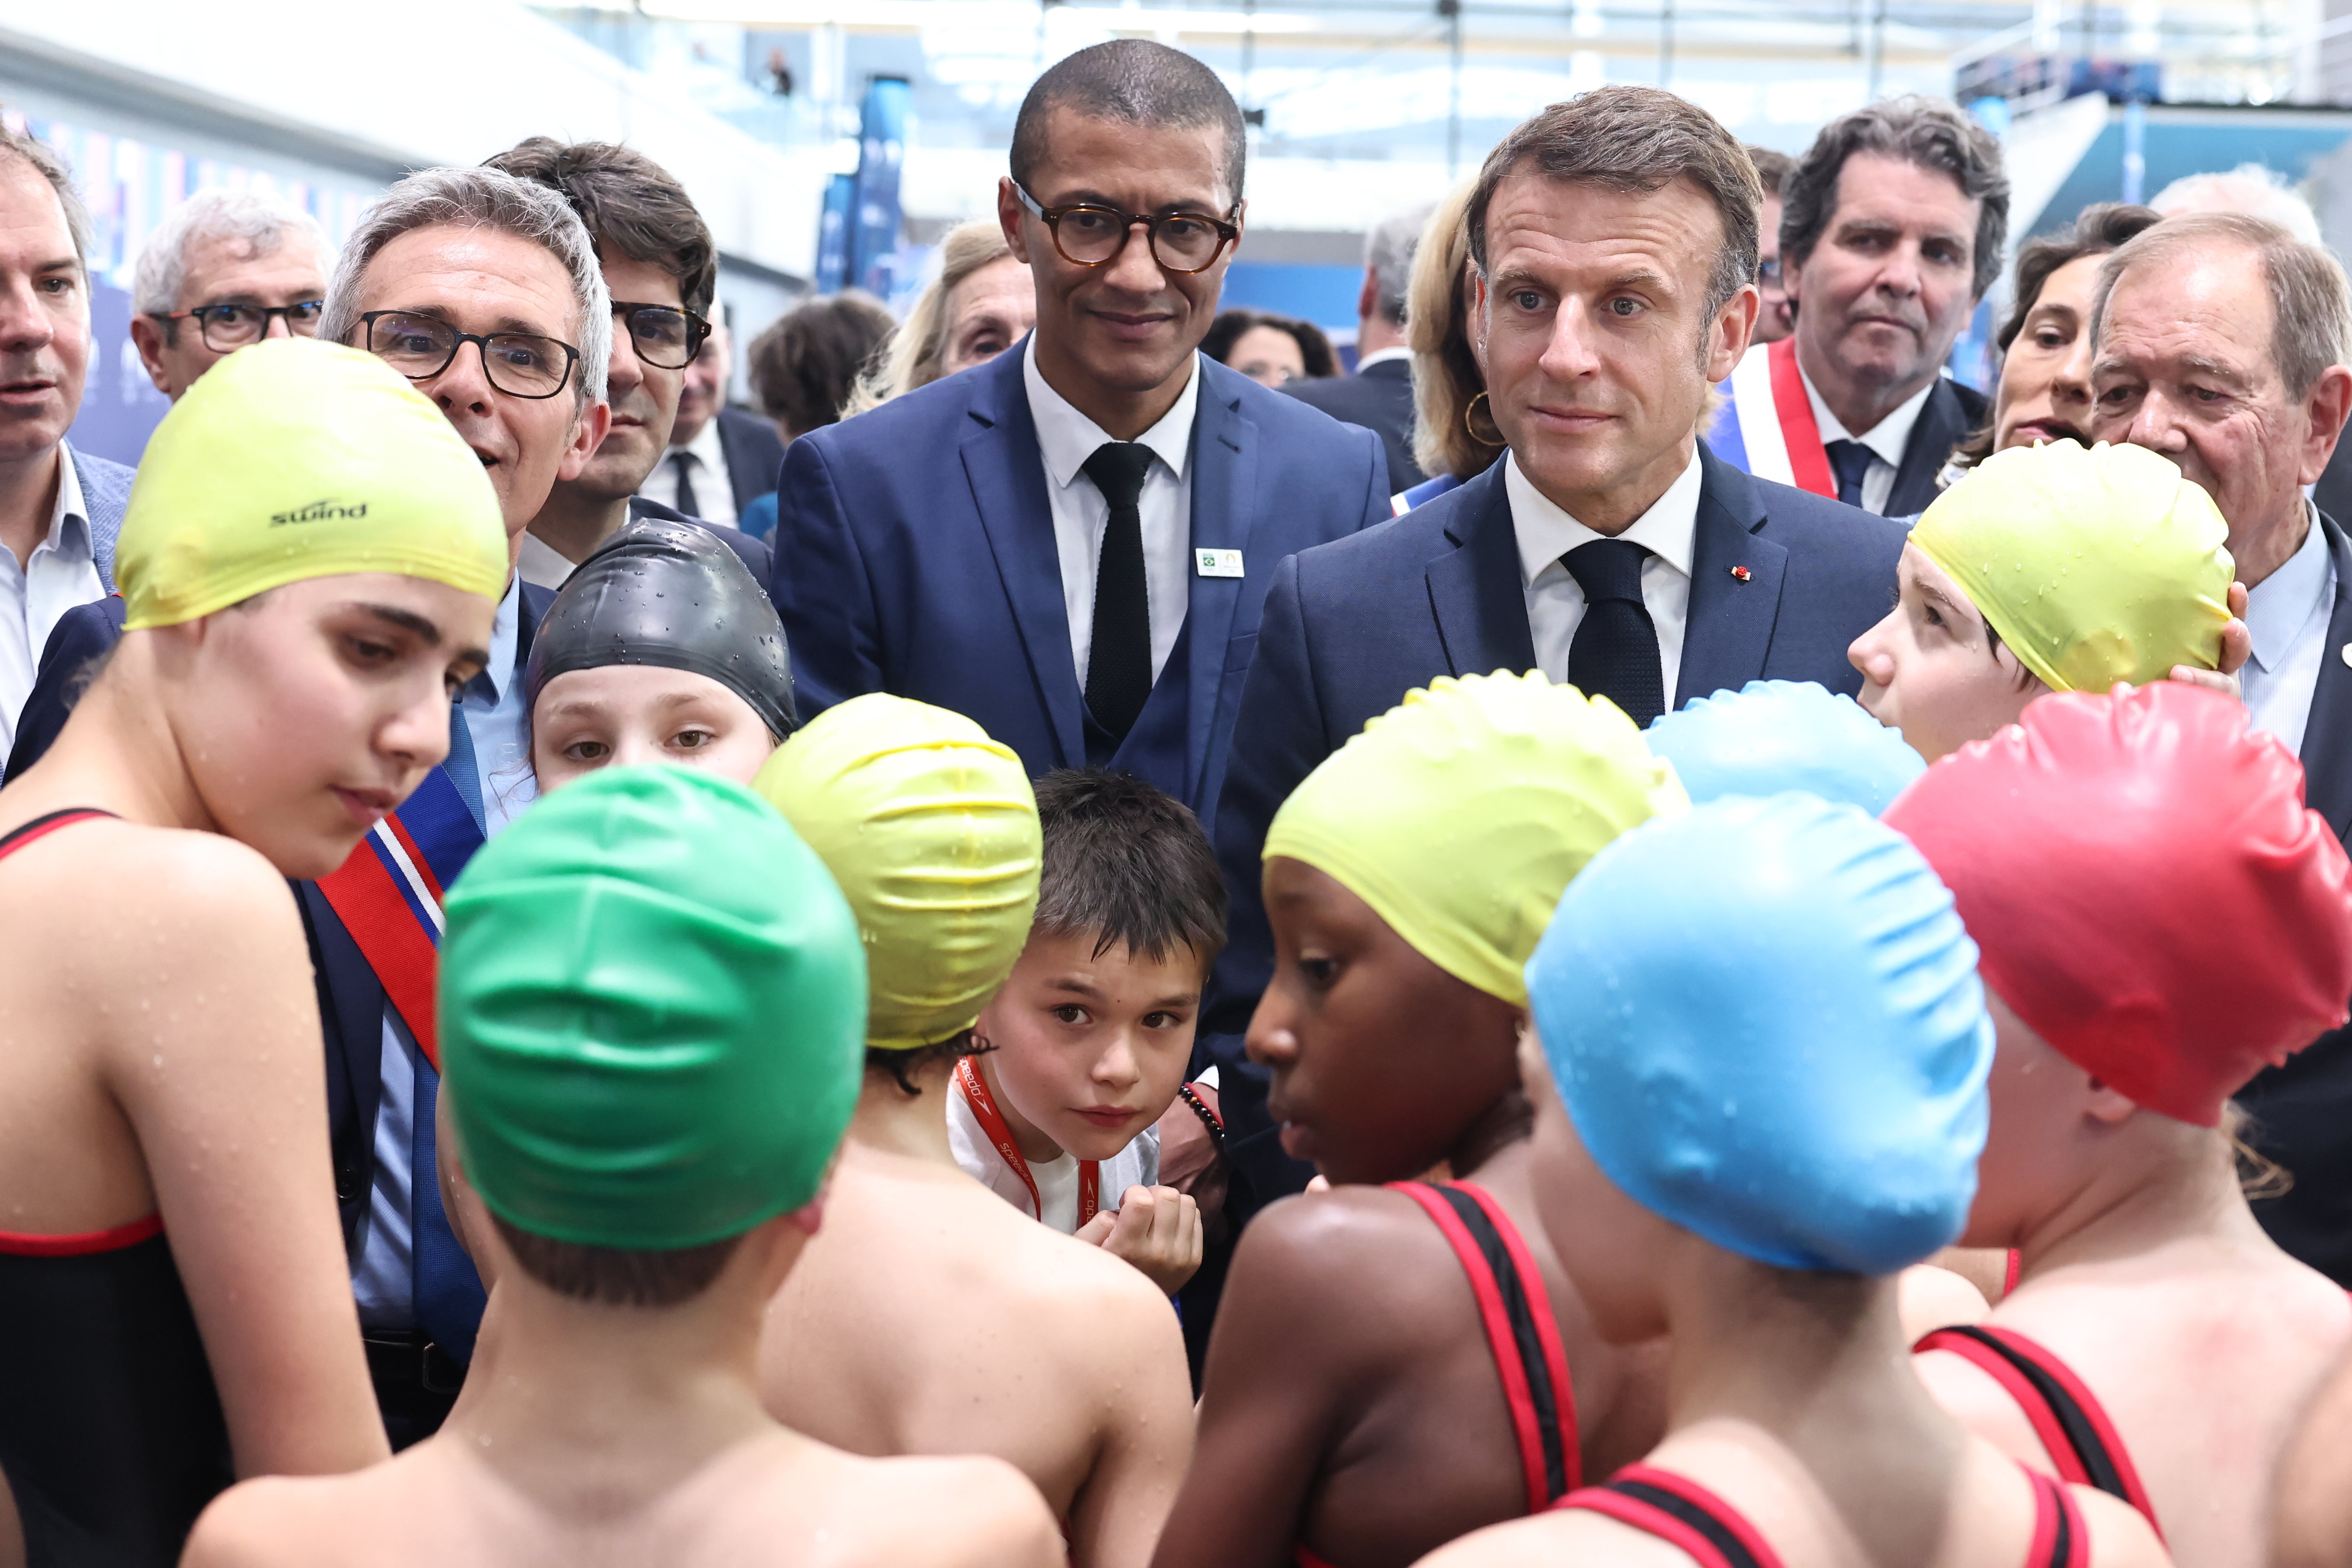 Ce jeudi, Emmanuel Macron évoque la préparation de "plusieurs scénarios" concernant la cérémonie d'ouverture des Jeux olympiques. LP / Fred Dugit